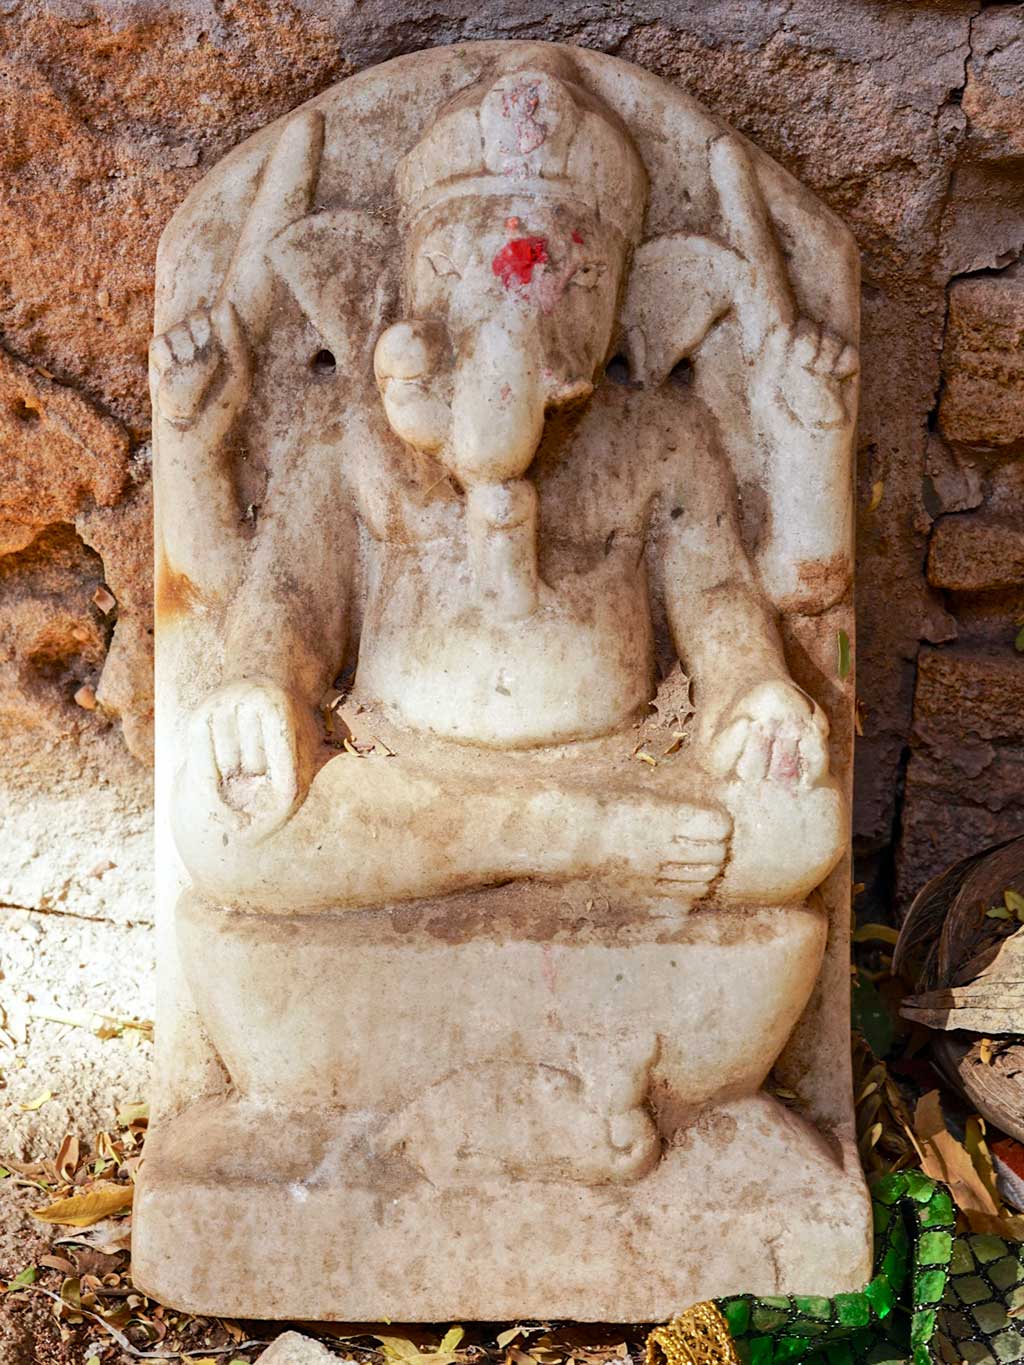 Ganesh at Ratba Vav stepwell, Gujarat